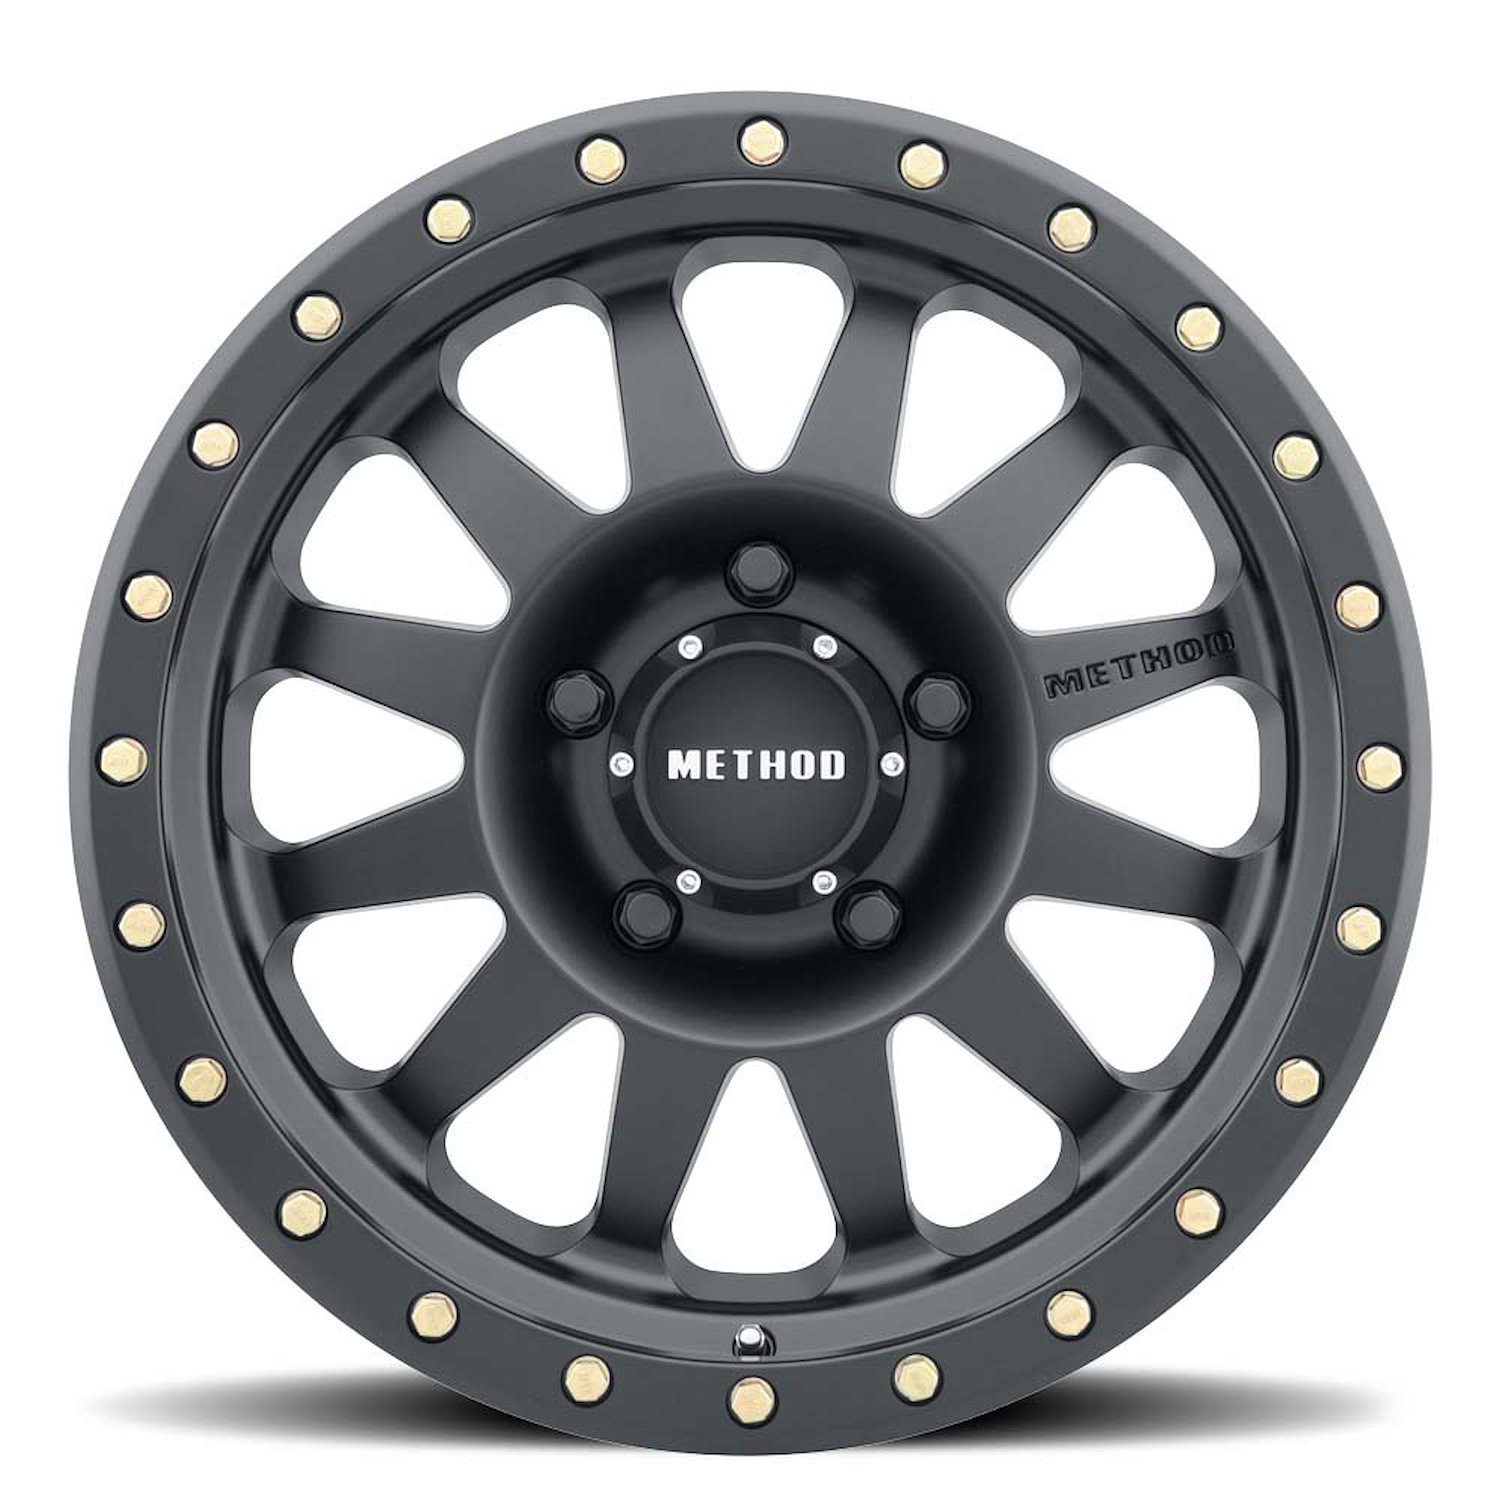 MR30458012524N STREET MR304 Double Standard Wheel [Size: 15" x 8"] Matte Black